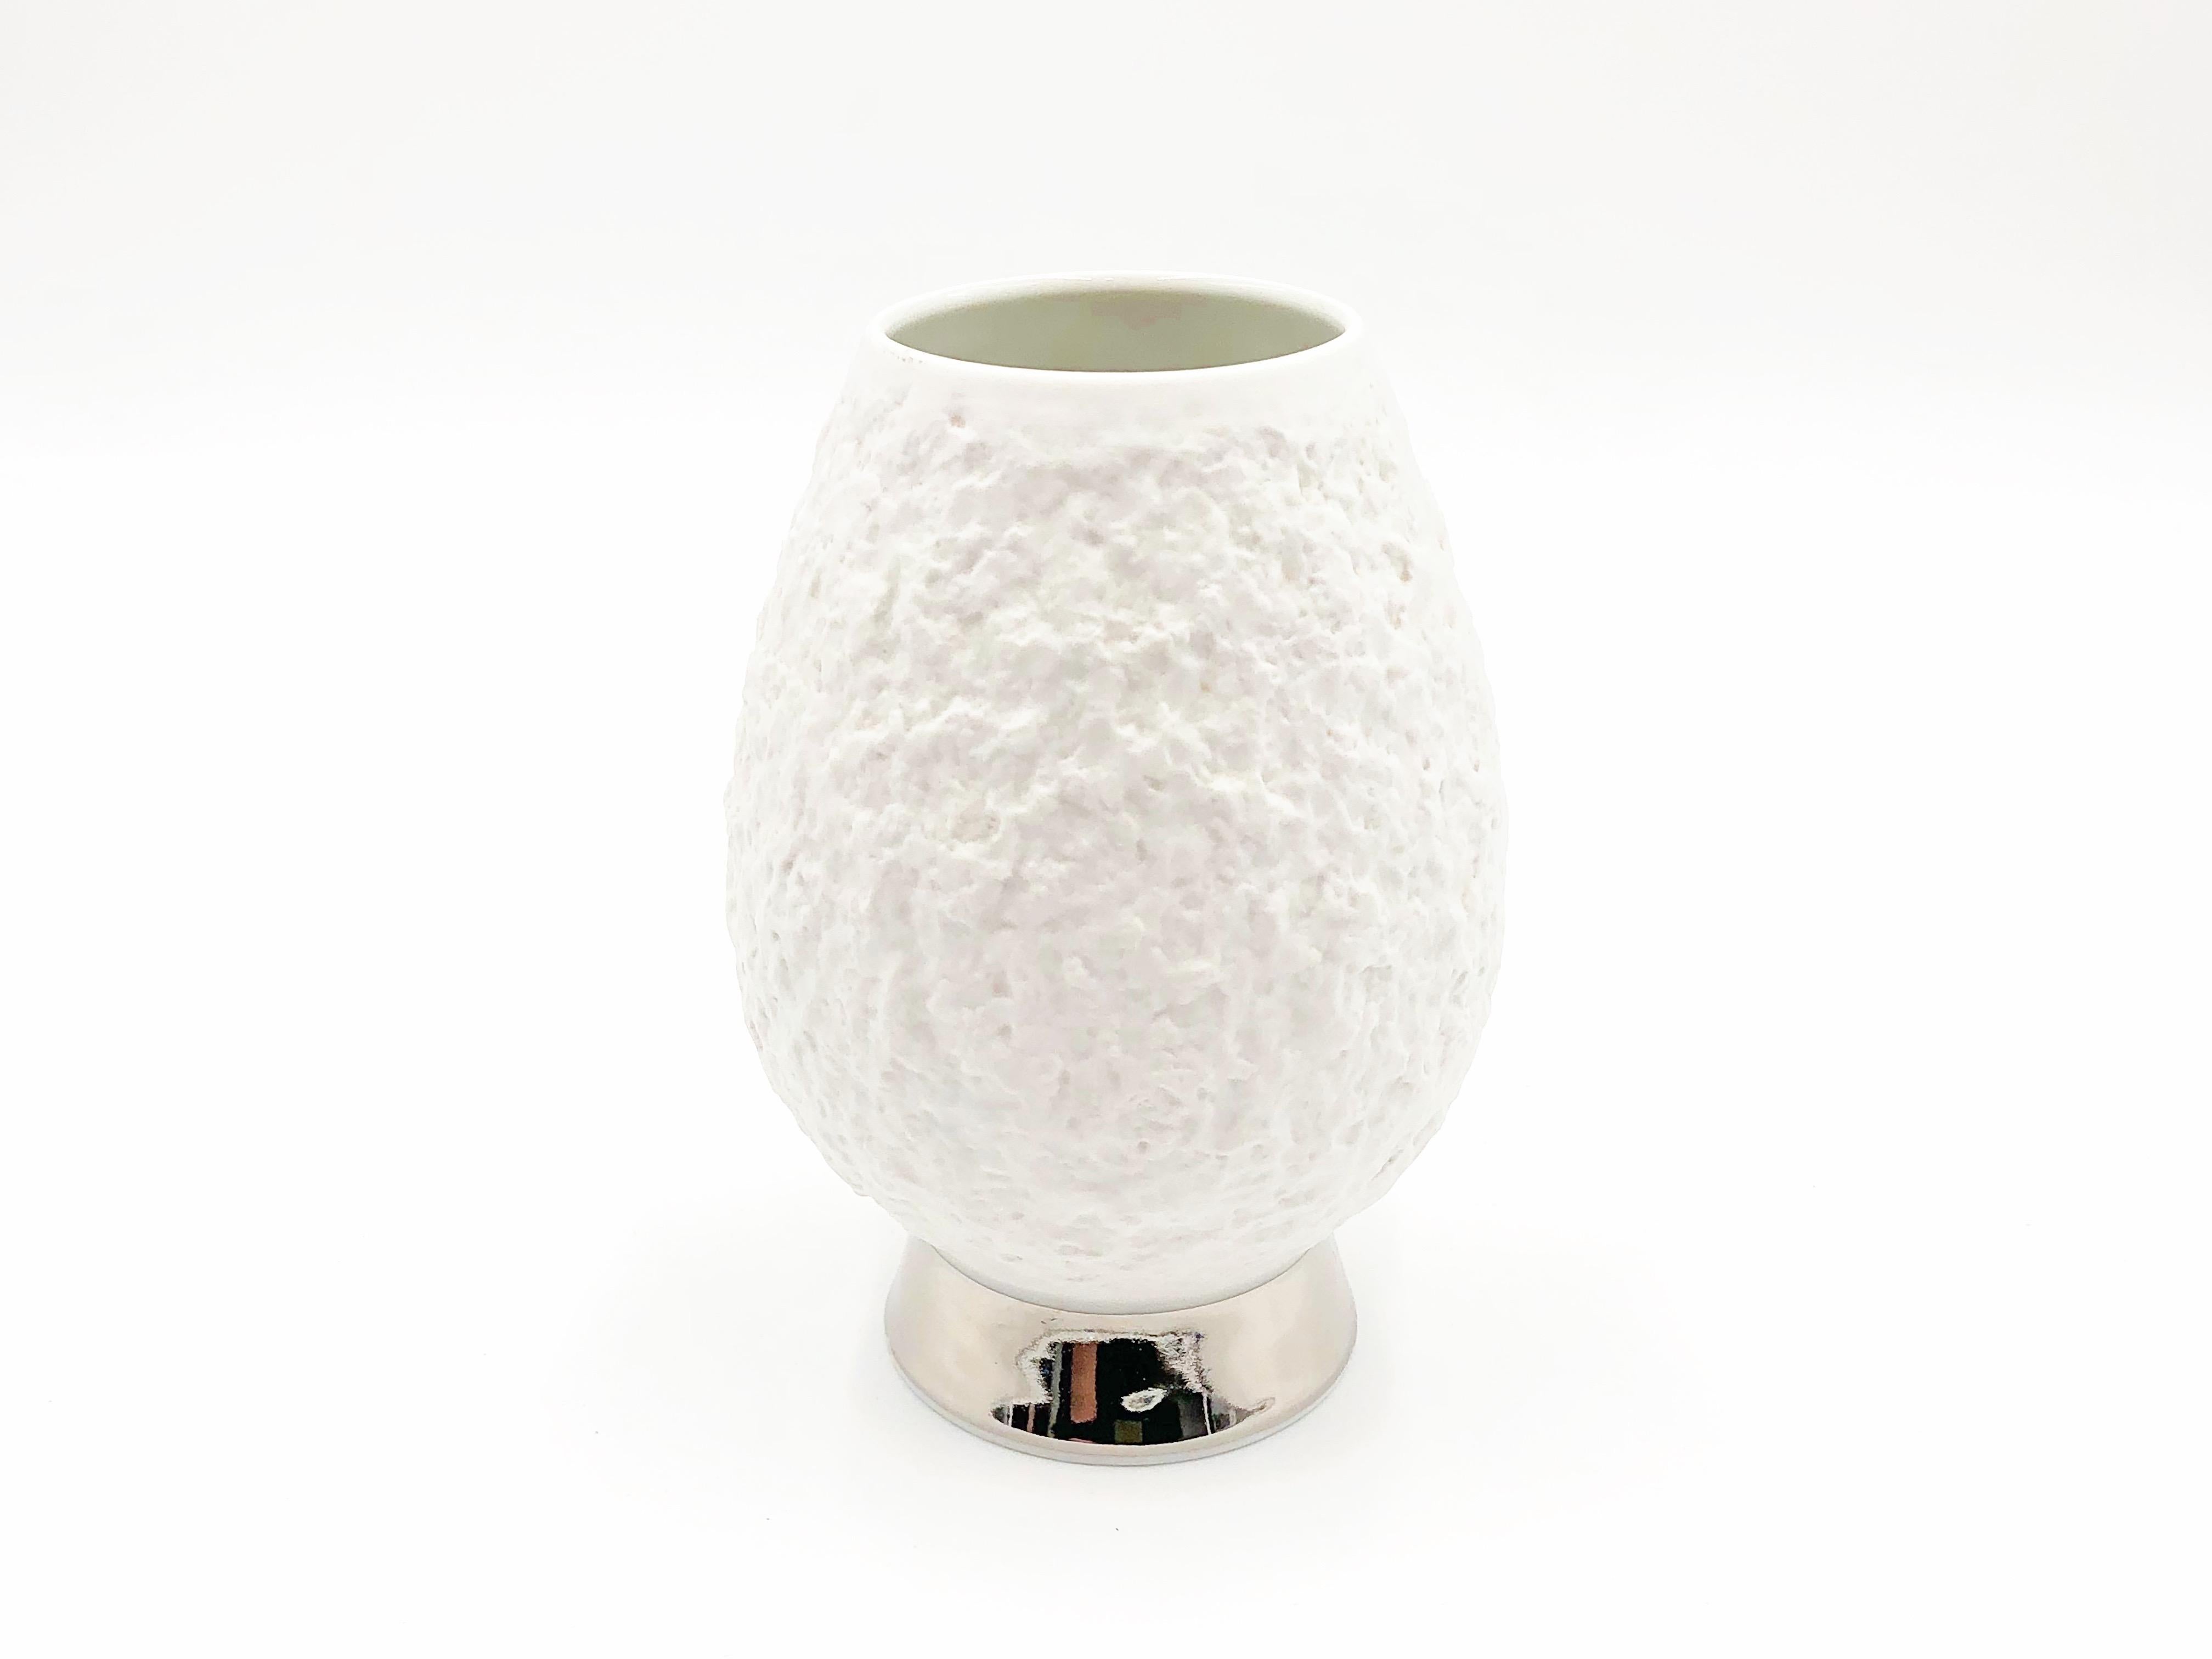 Moderne Porzellanvase der KPM Royal Porzellanmanufaktur in Deutschland, um 1960.

Vase aus weißem, mattem, unglasiertem, strukturiertem Porzellan mit silbernen Details am Boden. Das Innere ist verglast. Kennzeichnung KPM auf dem